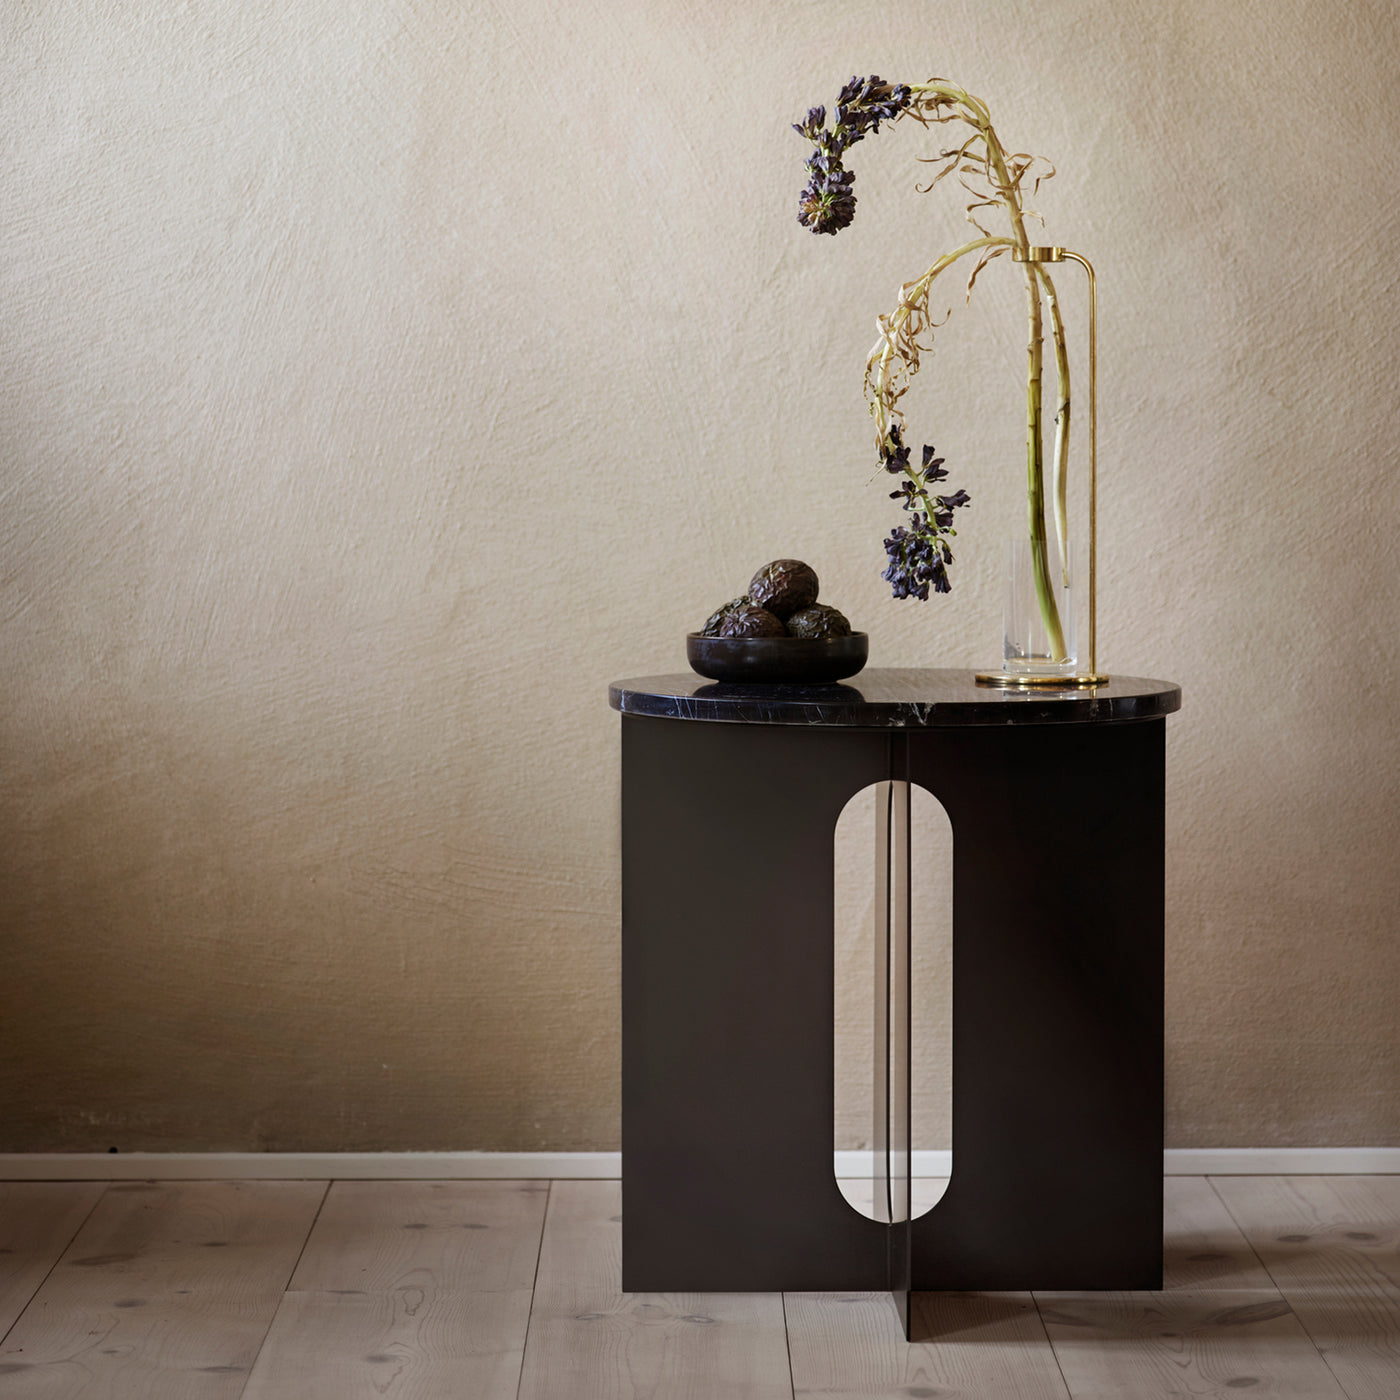 Luxusní noční stolek, černý skandinávský odkládací stolek do obýváku s maramorem, mramorový noční stůl od Menu, Menu space skandinávská značka